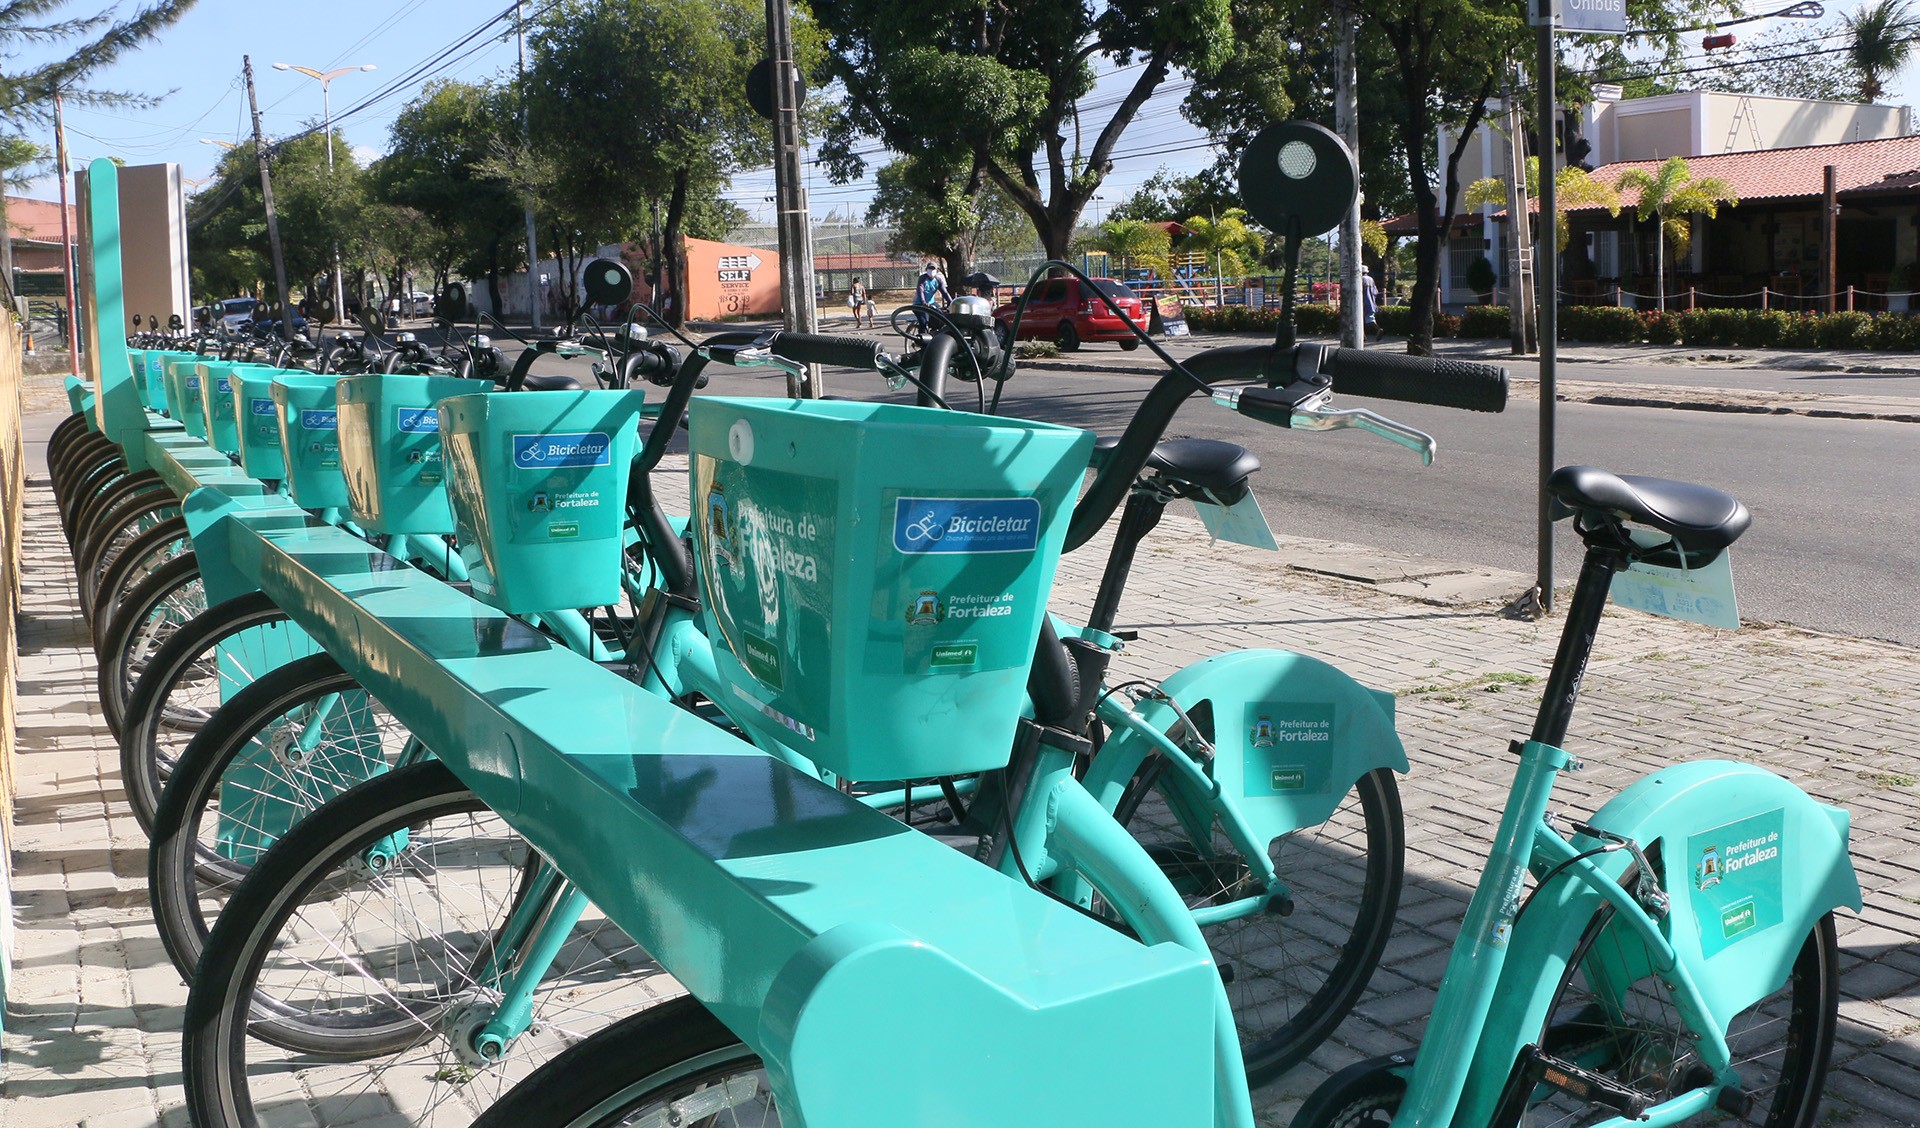 Fóruns Territoriais de Fortaleza - Fórun Territorial Coaçu, Paupina e São Bento - Prefeitura de Fortaleza inicia operação de oito novas estações do Bicicletar nas Regionais VI e IV